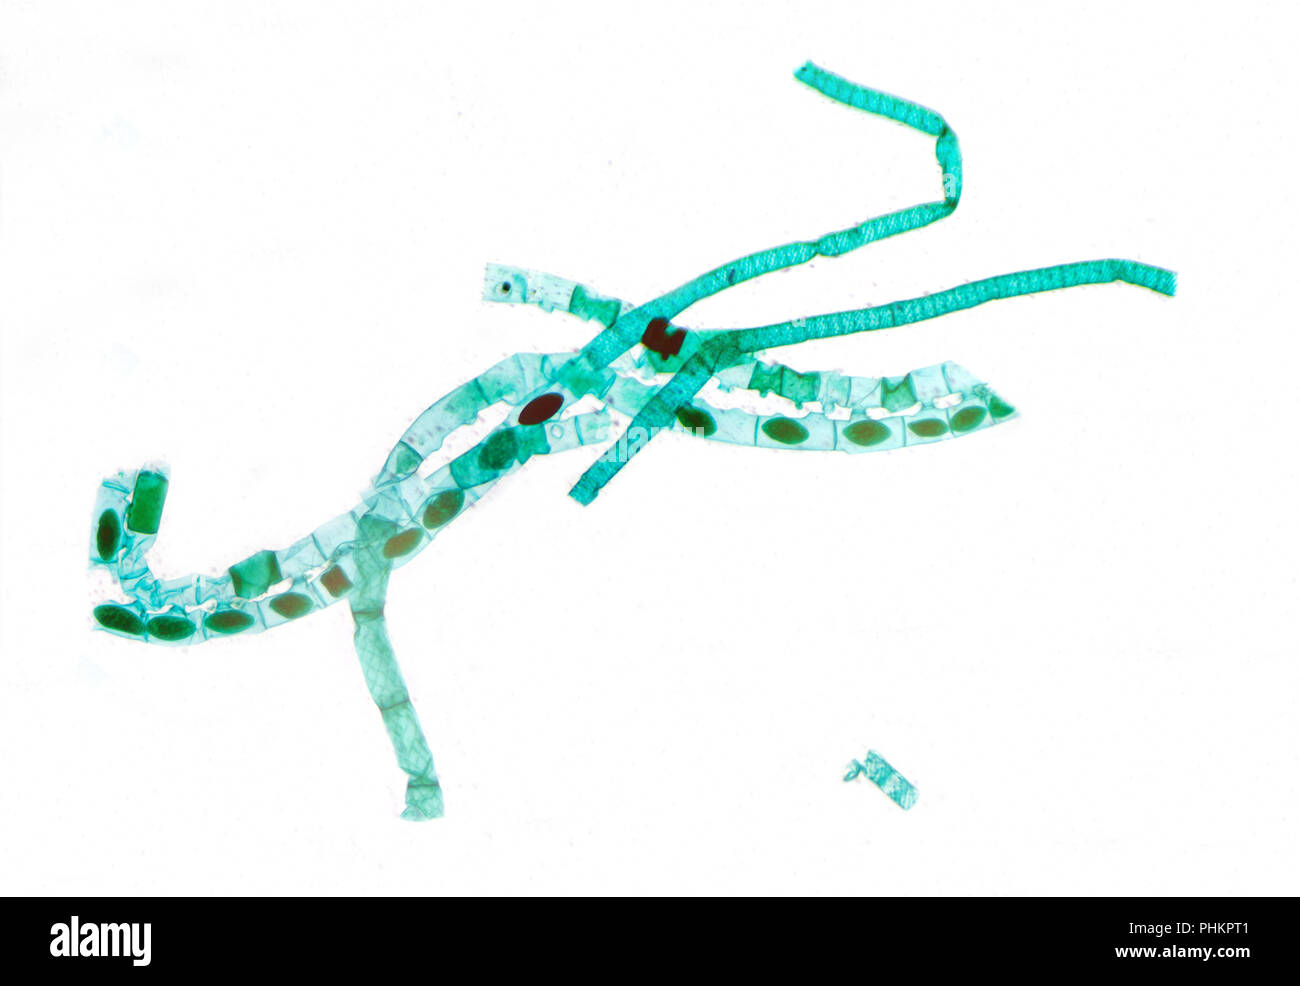 Vista microscópica de Spirogyra algas Foto de stock